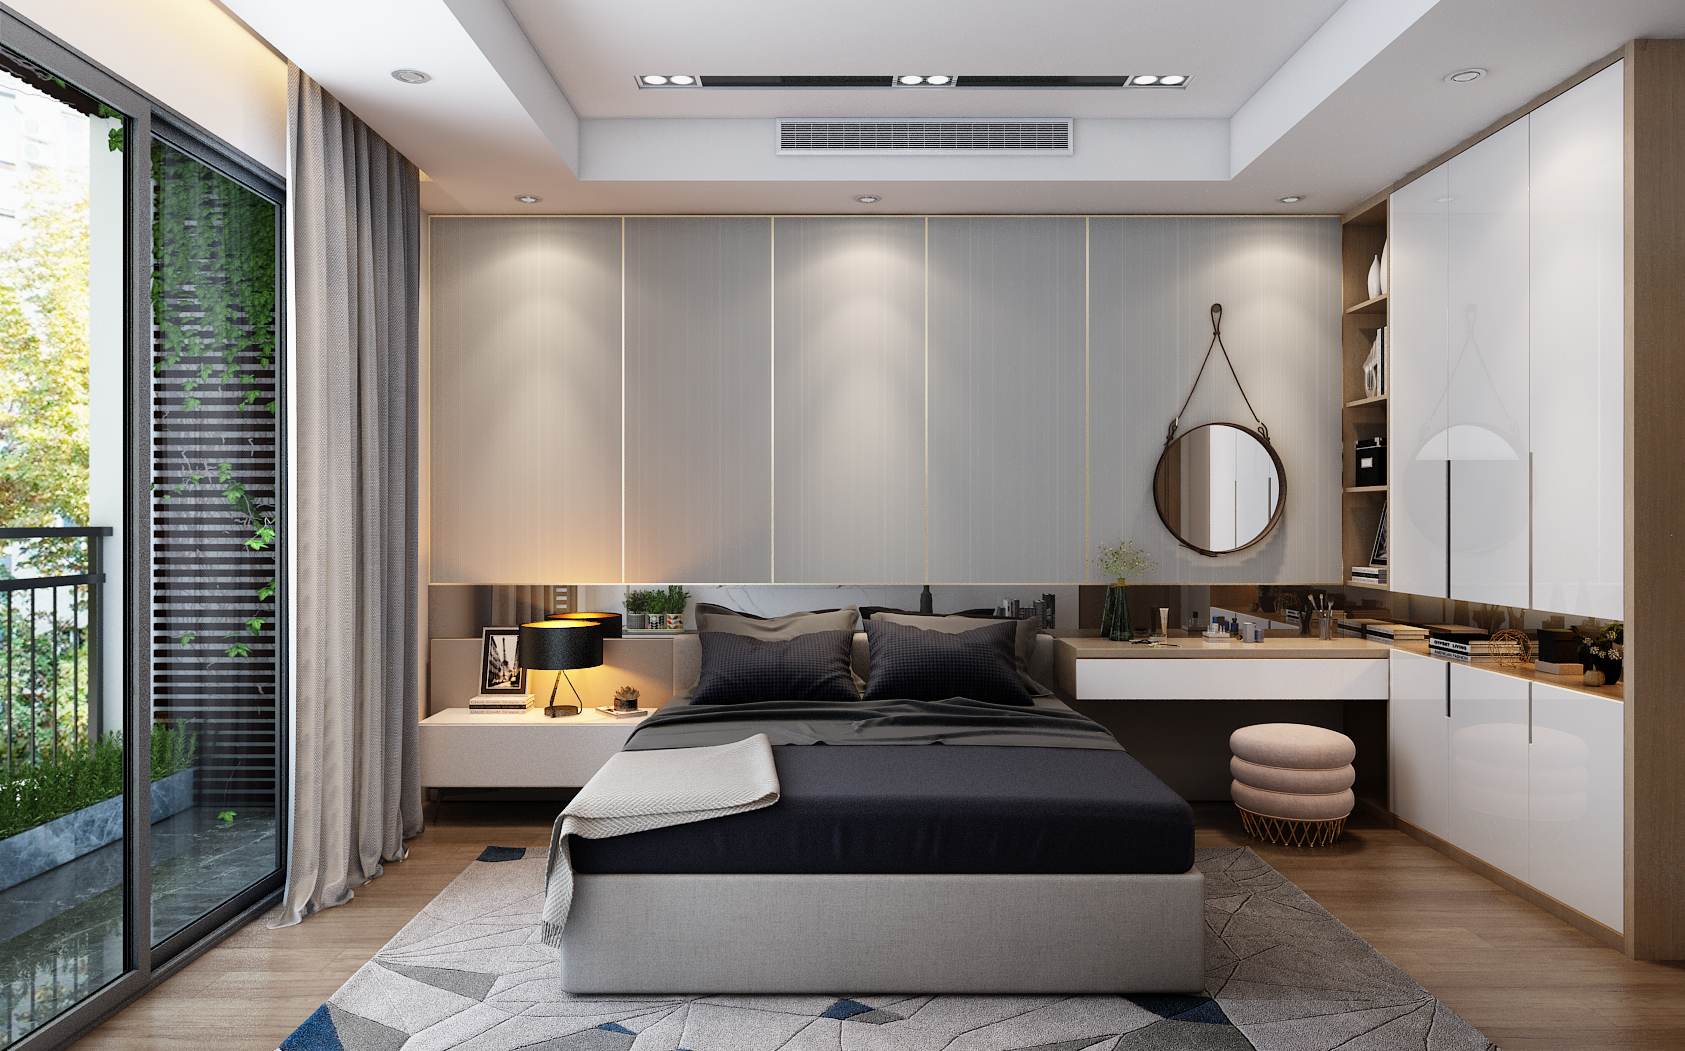 thiết kế nội thất chung cư tại Hà Nội Dự án HongKong Tower - Hà Nội 16 1538380975